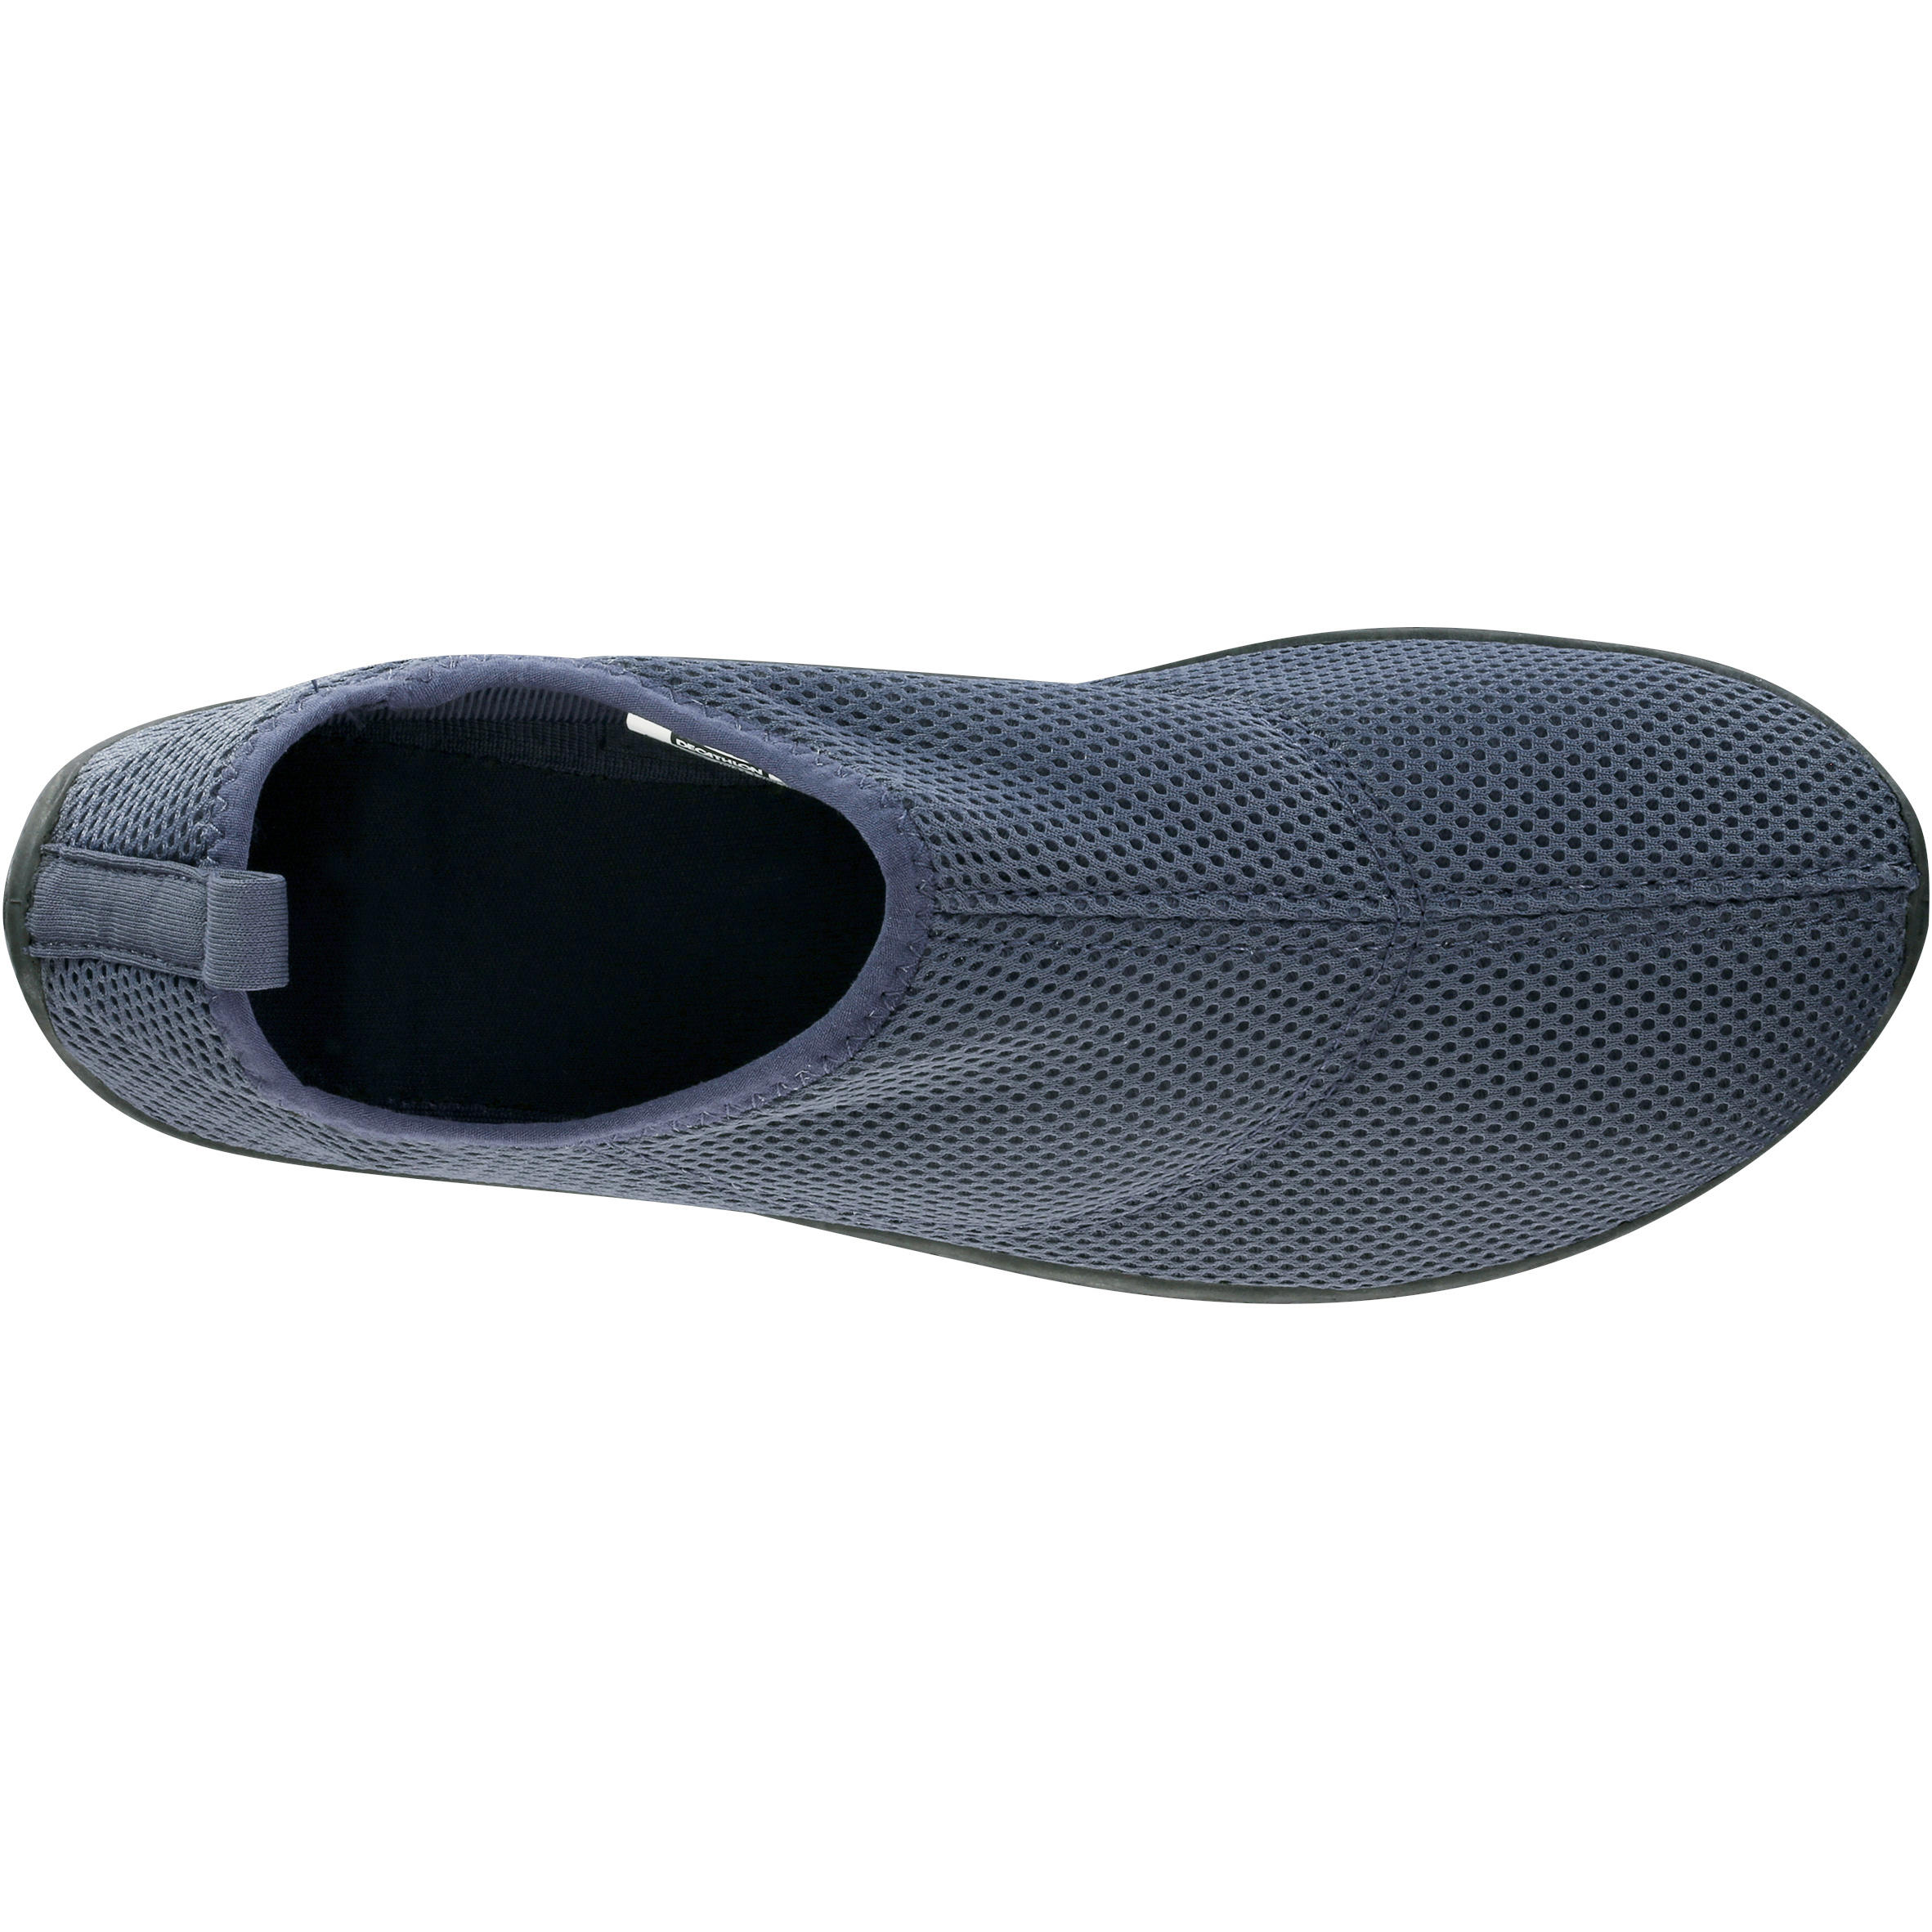 Water Shoes - 100 - Dark grey - Subea - Decathlon